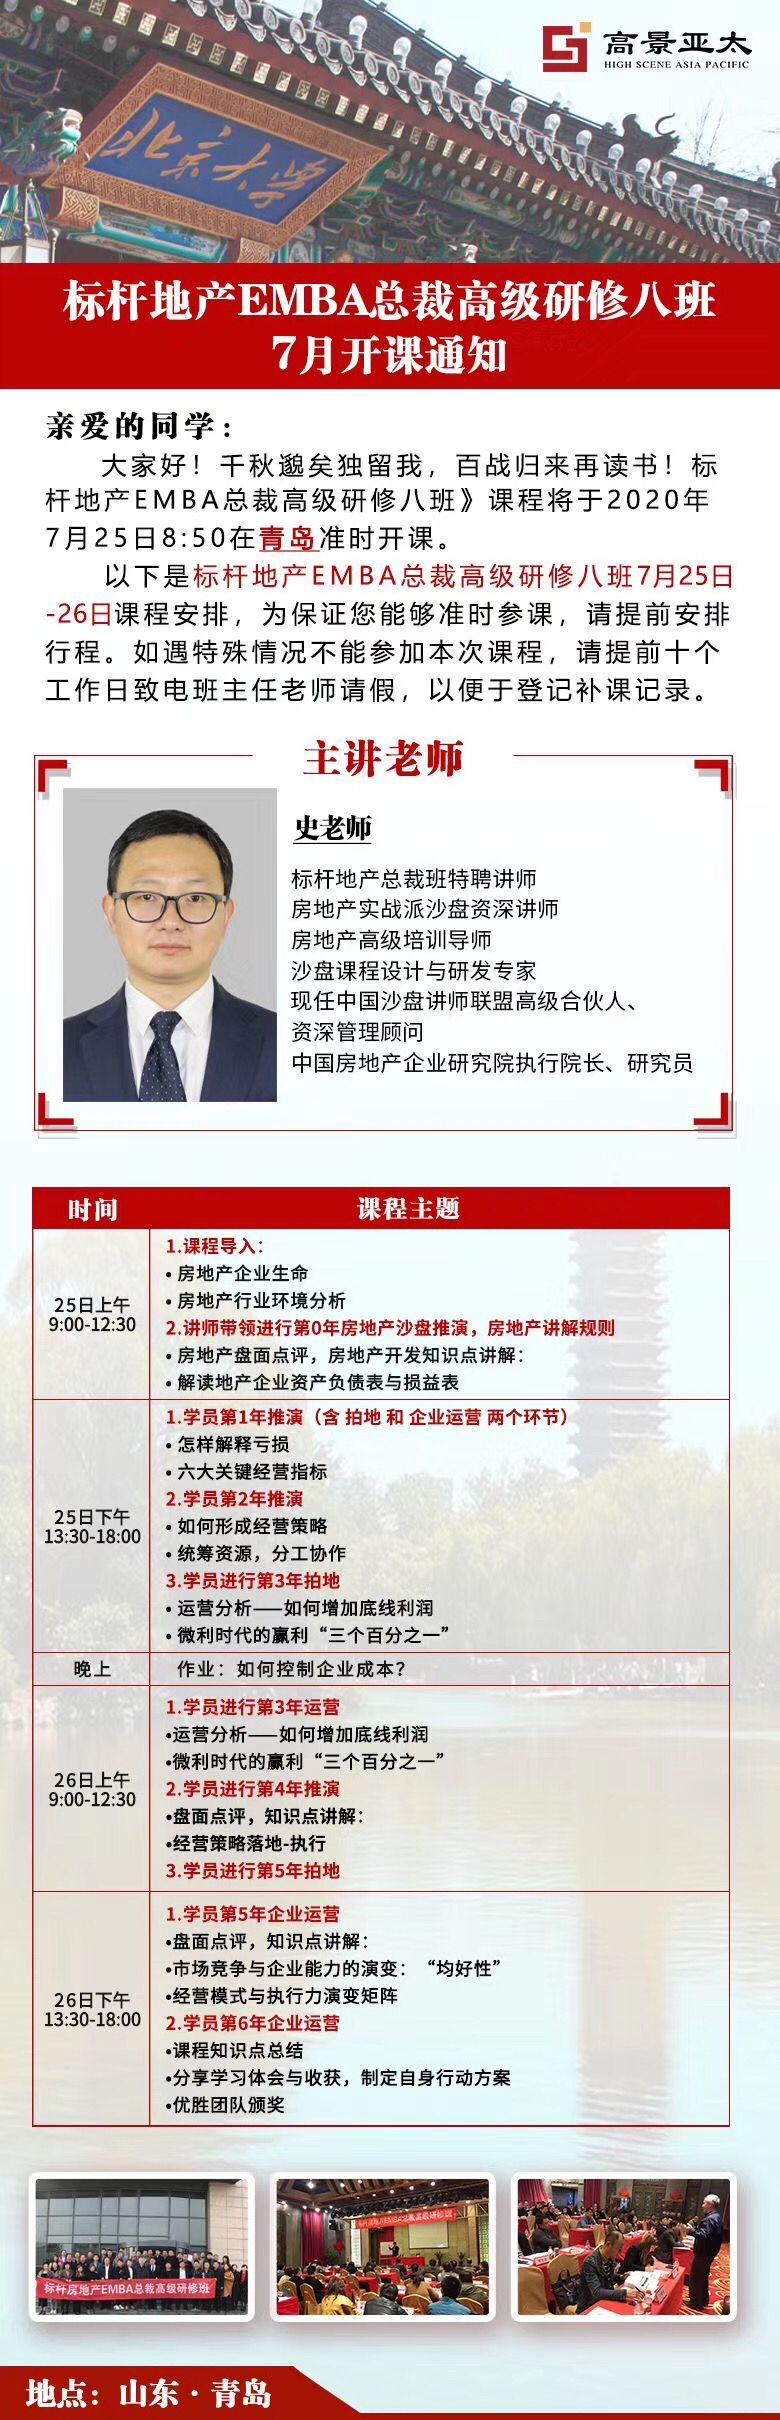 北京大学标杆地产EMBA总裁研修班2020年7月青岛游学通知